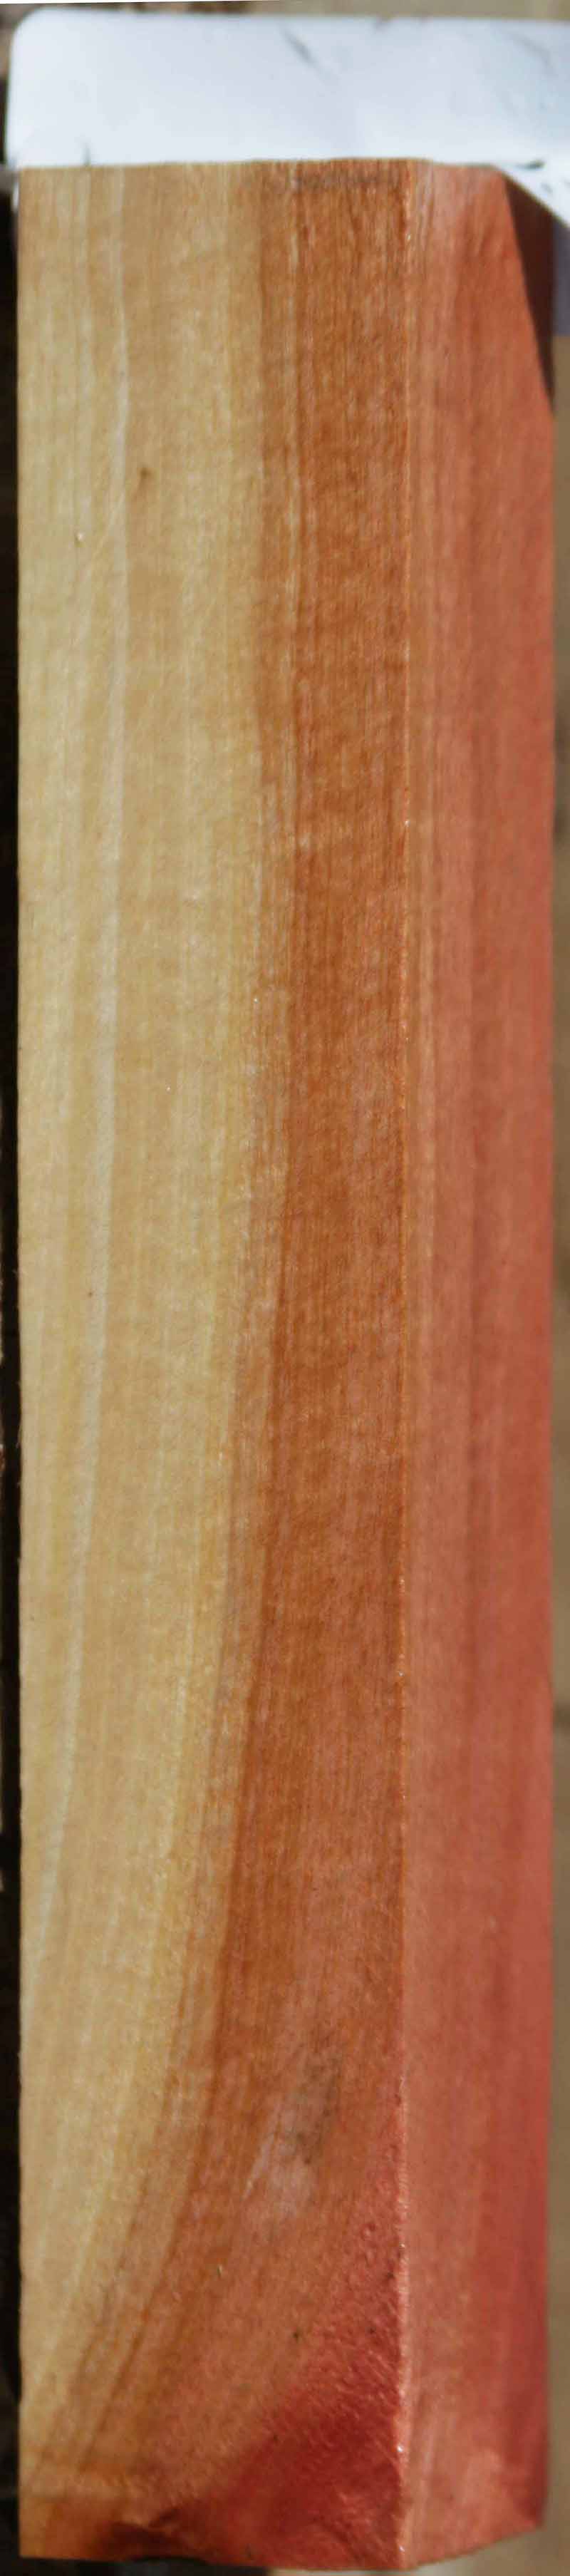 Pink Ivory Lumber